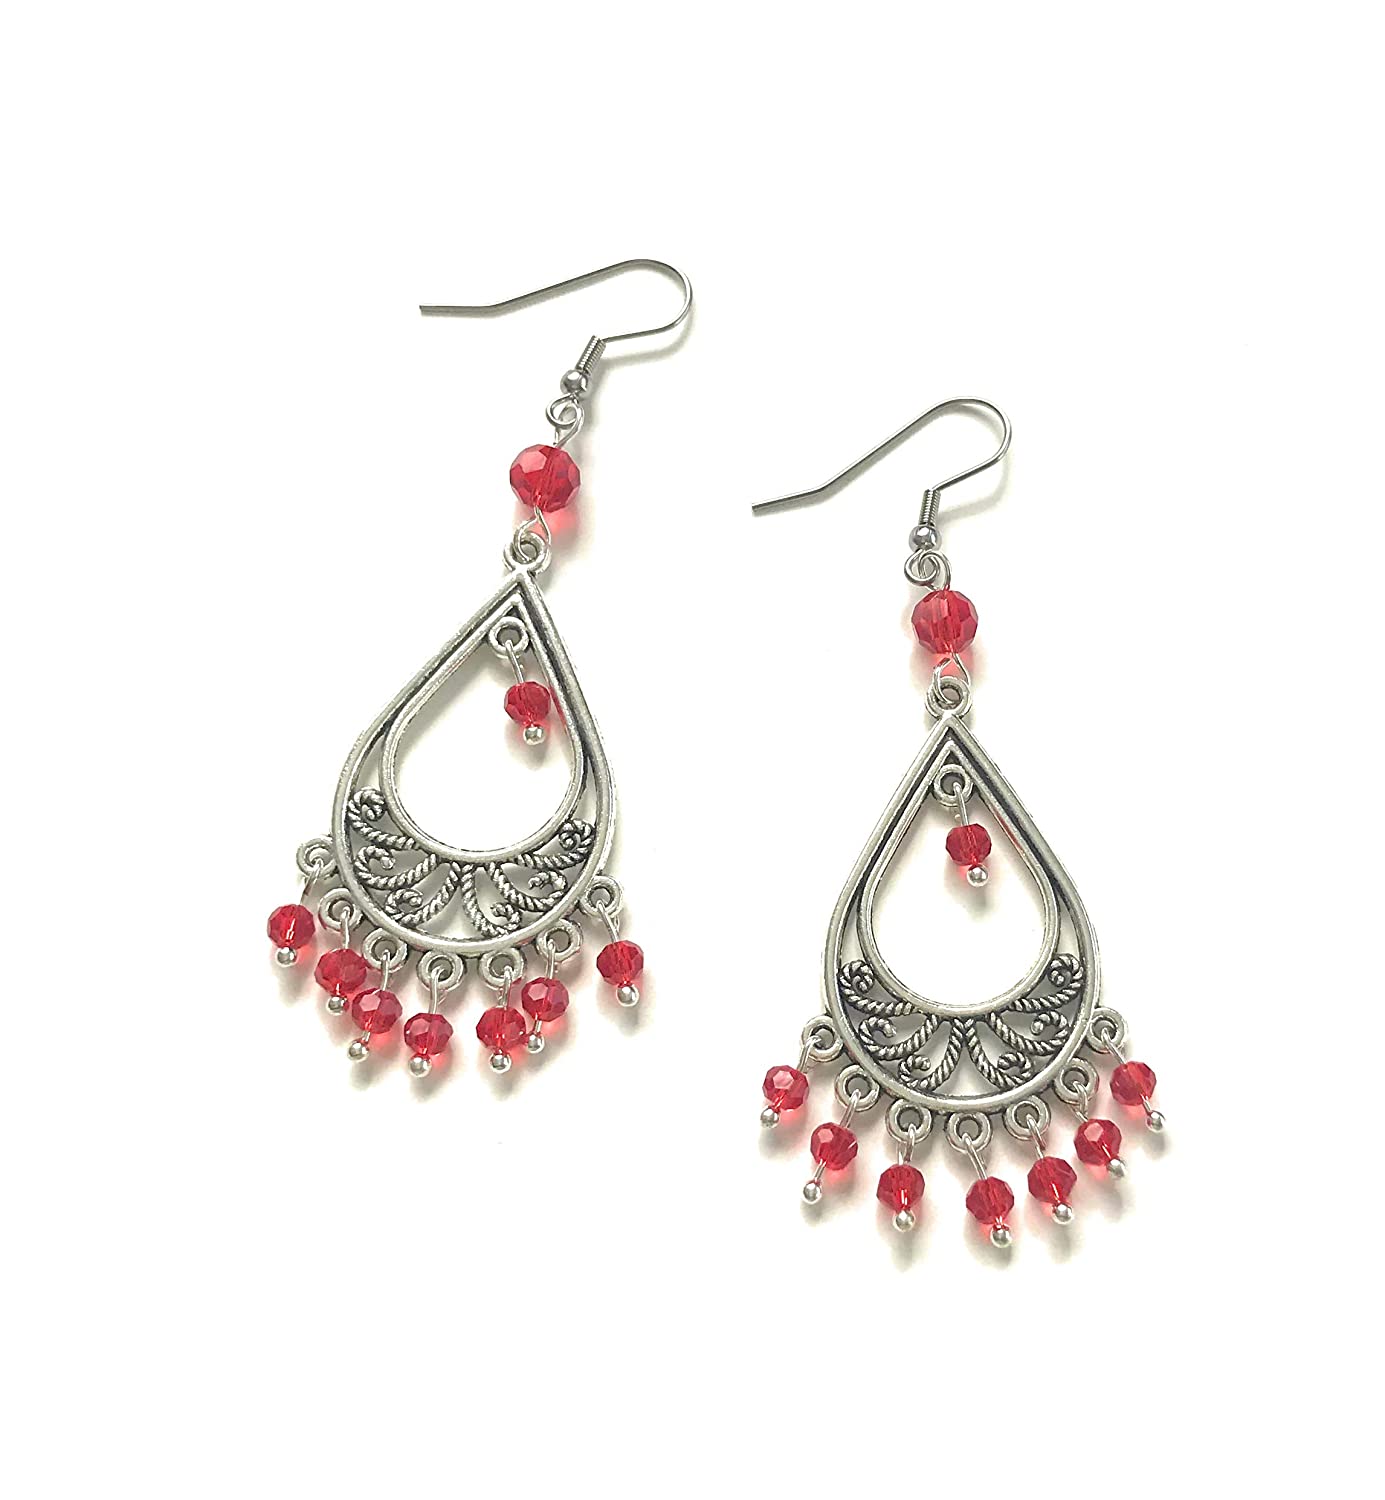 Red Beaded Chandelier Earrings Shown Side by Side from Scott D Jewelry Designs